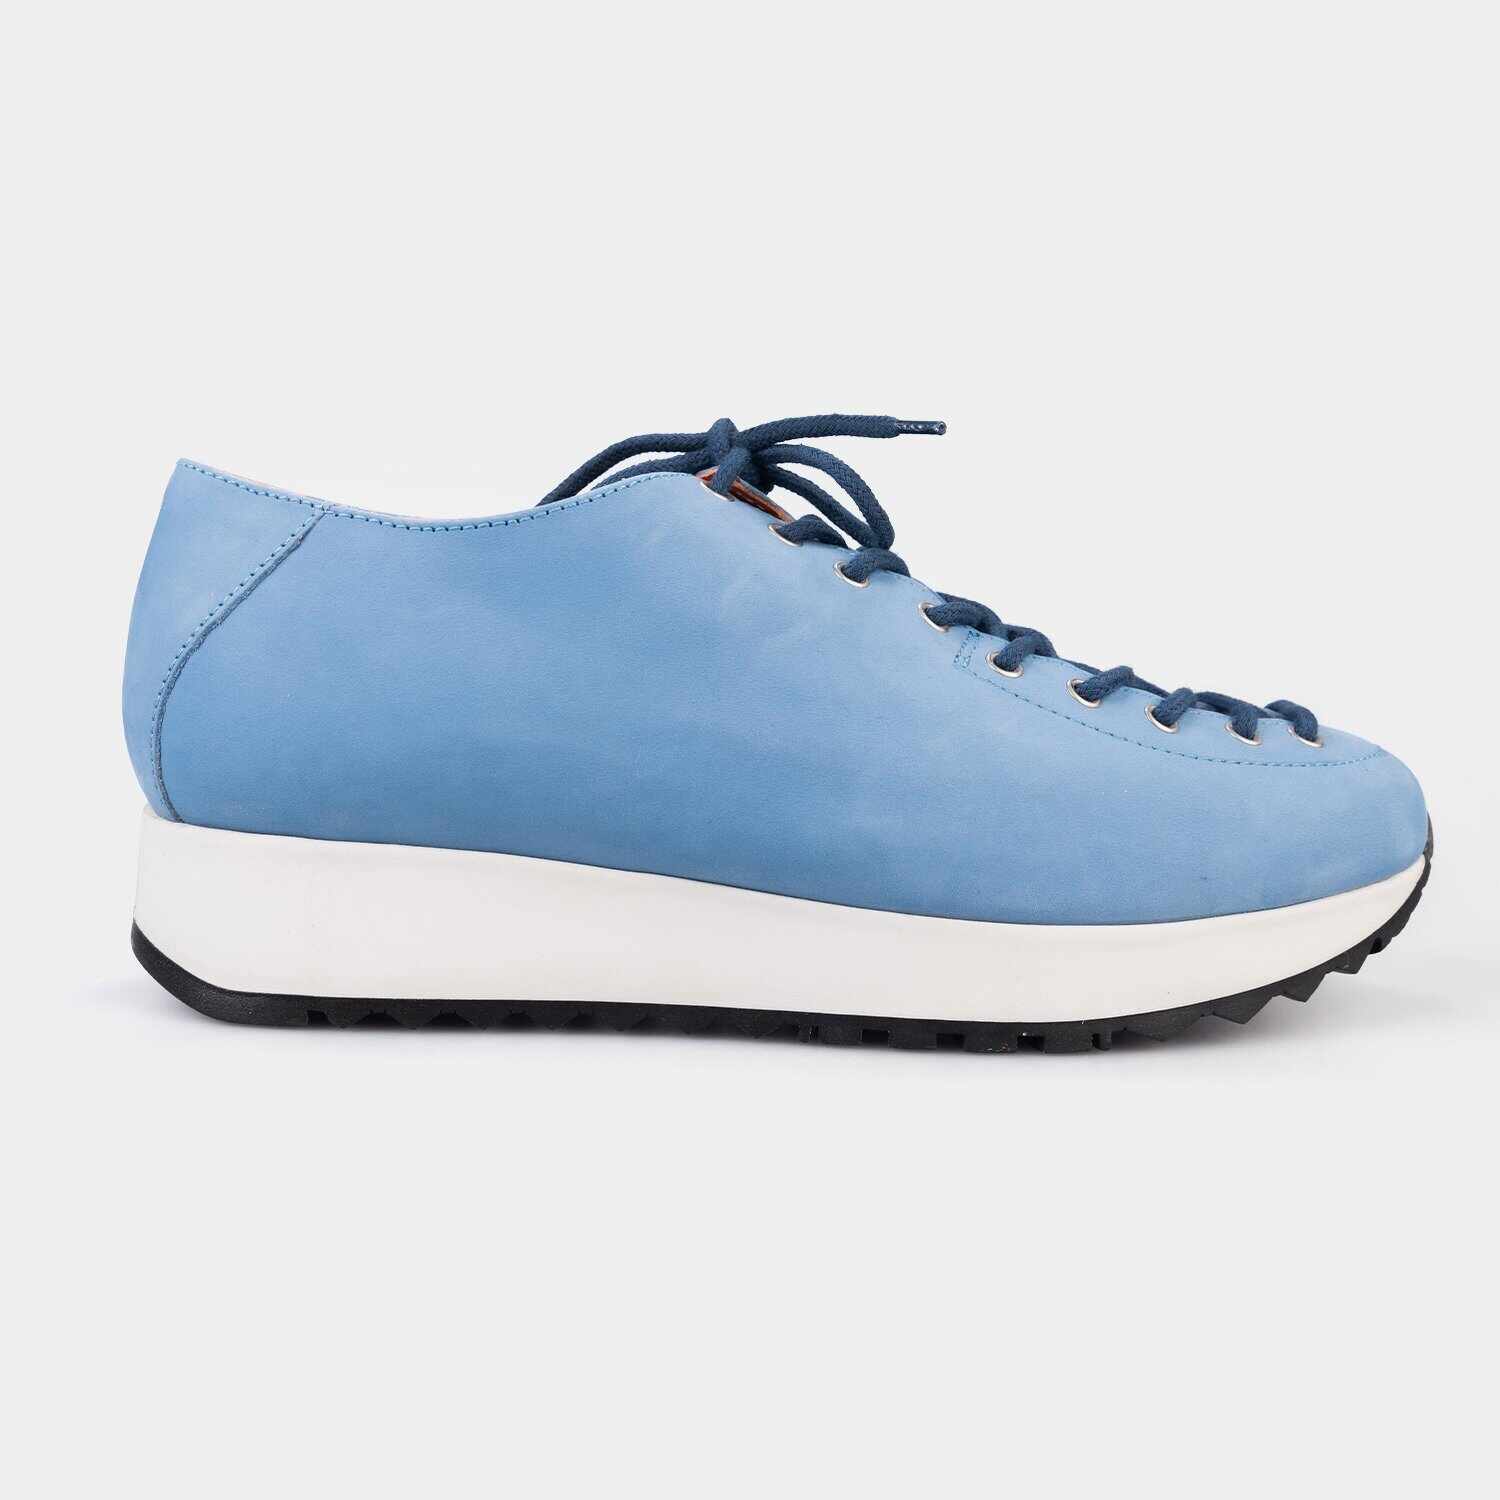 Pantofi casual dama din piele naturala,Leofex - 035 Albastru Deschis Nabuc